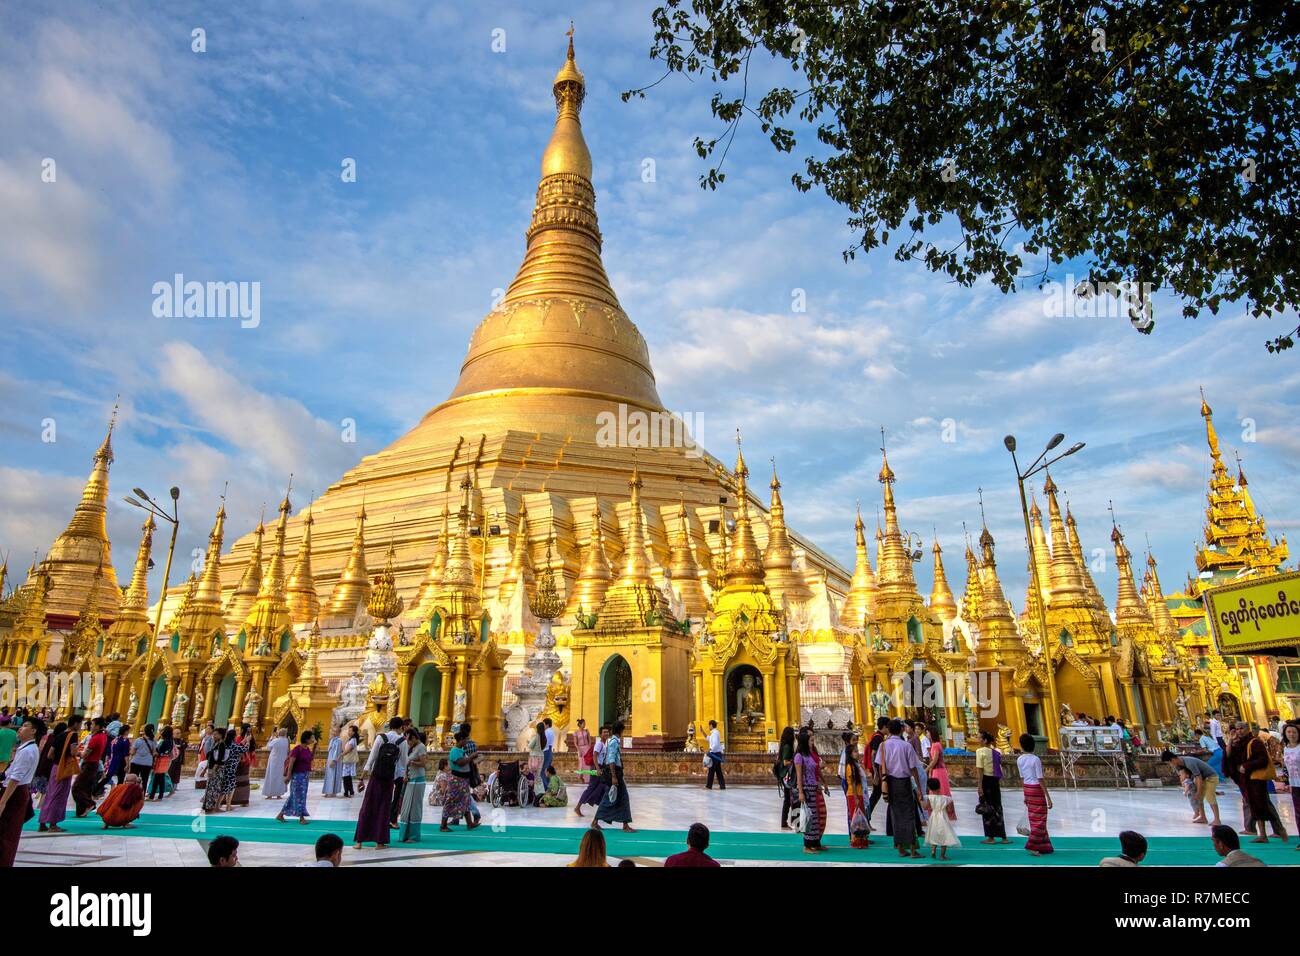 Myanmar Yangon, Schwedagon pagoda Foto Stock